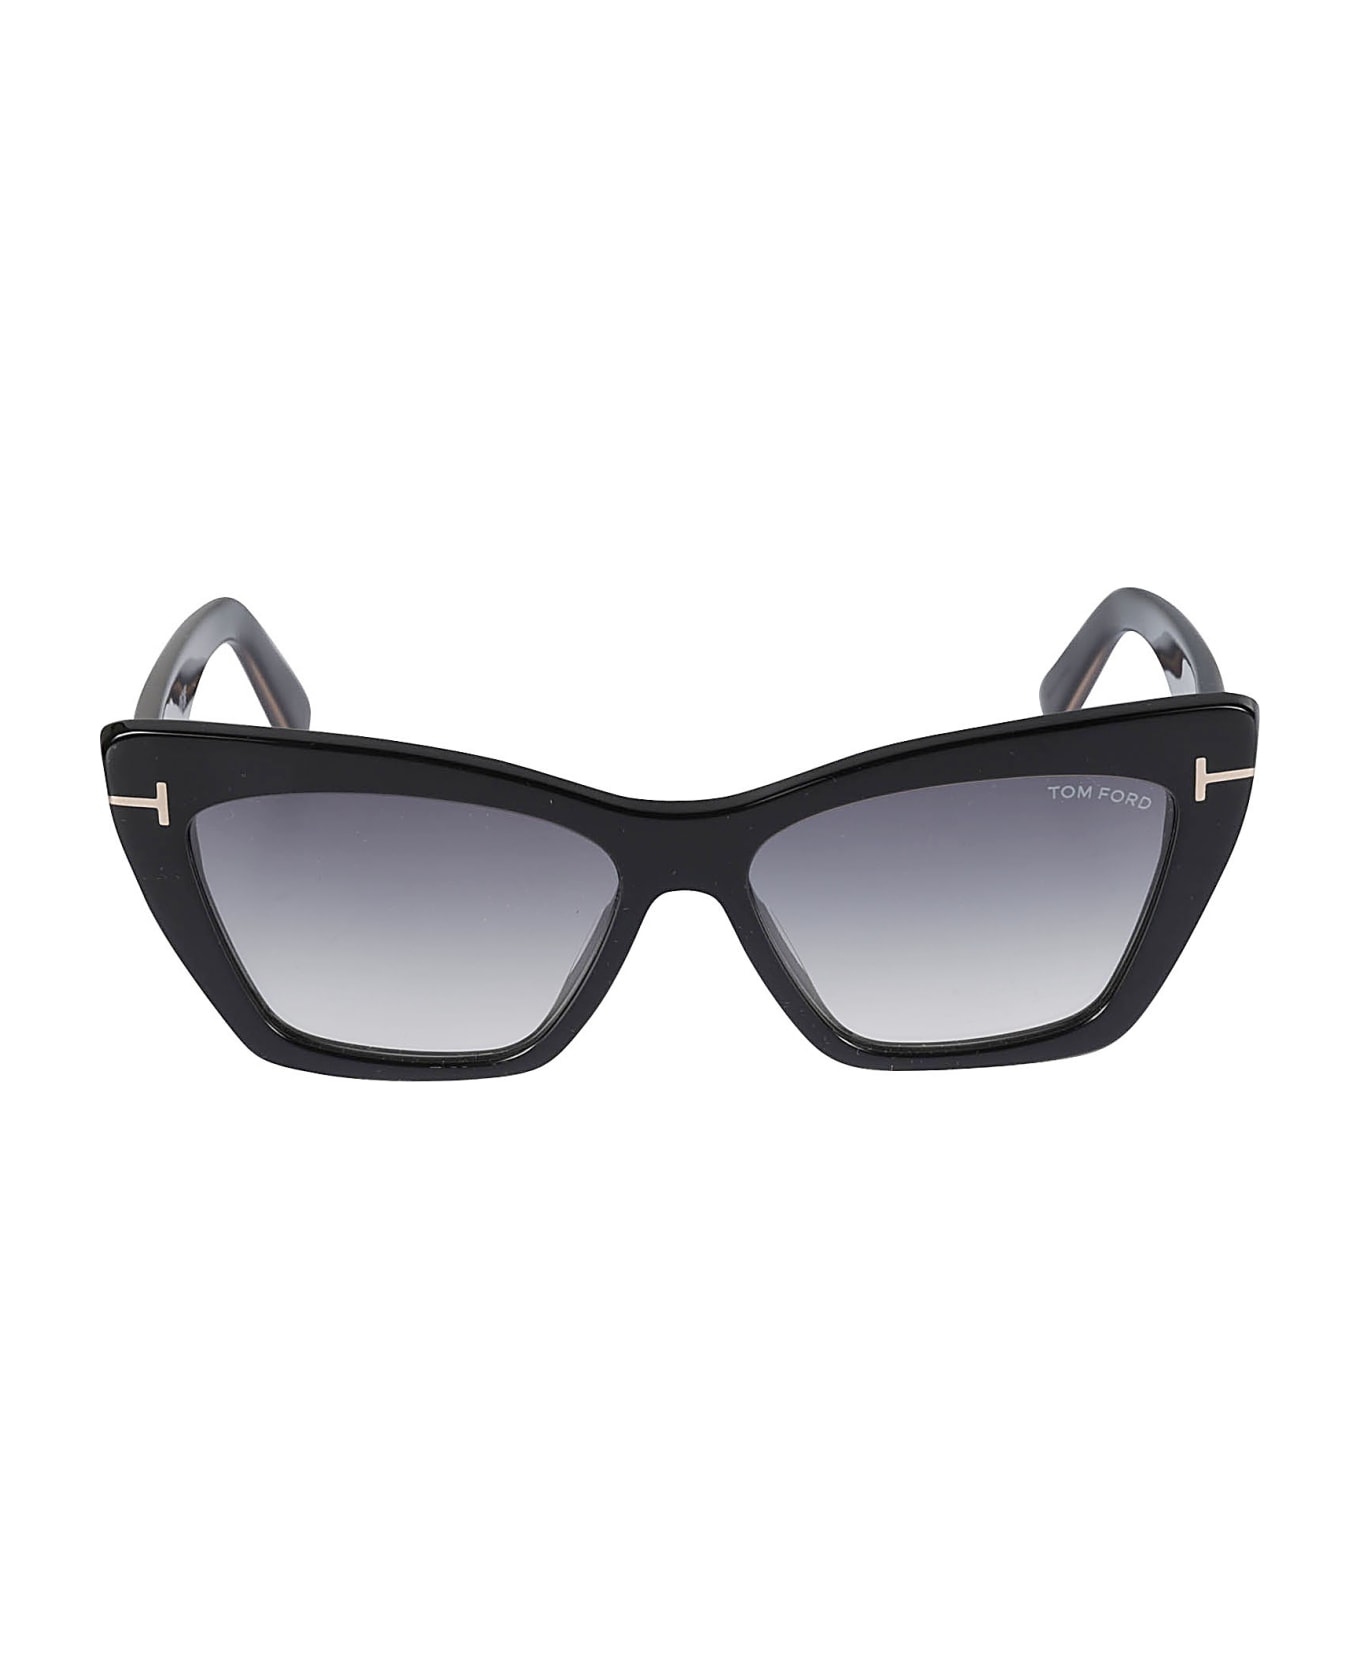 Tom Ford Eyewear Wyatt Sunglasses - 01B